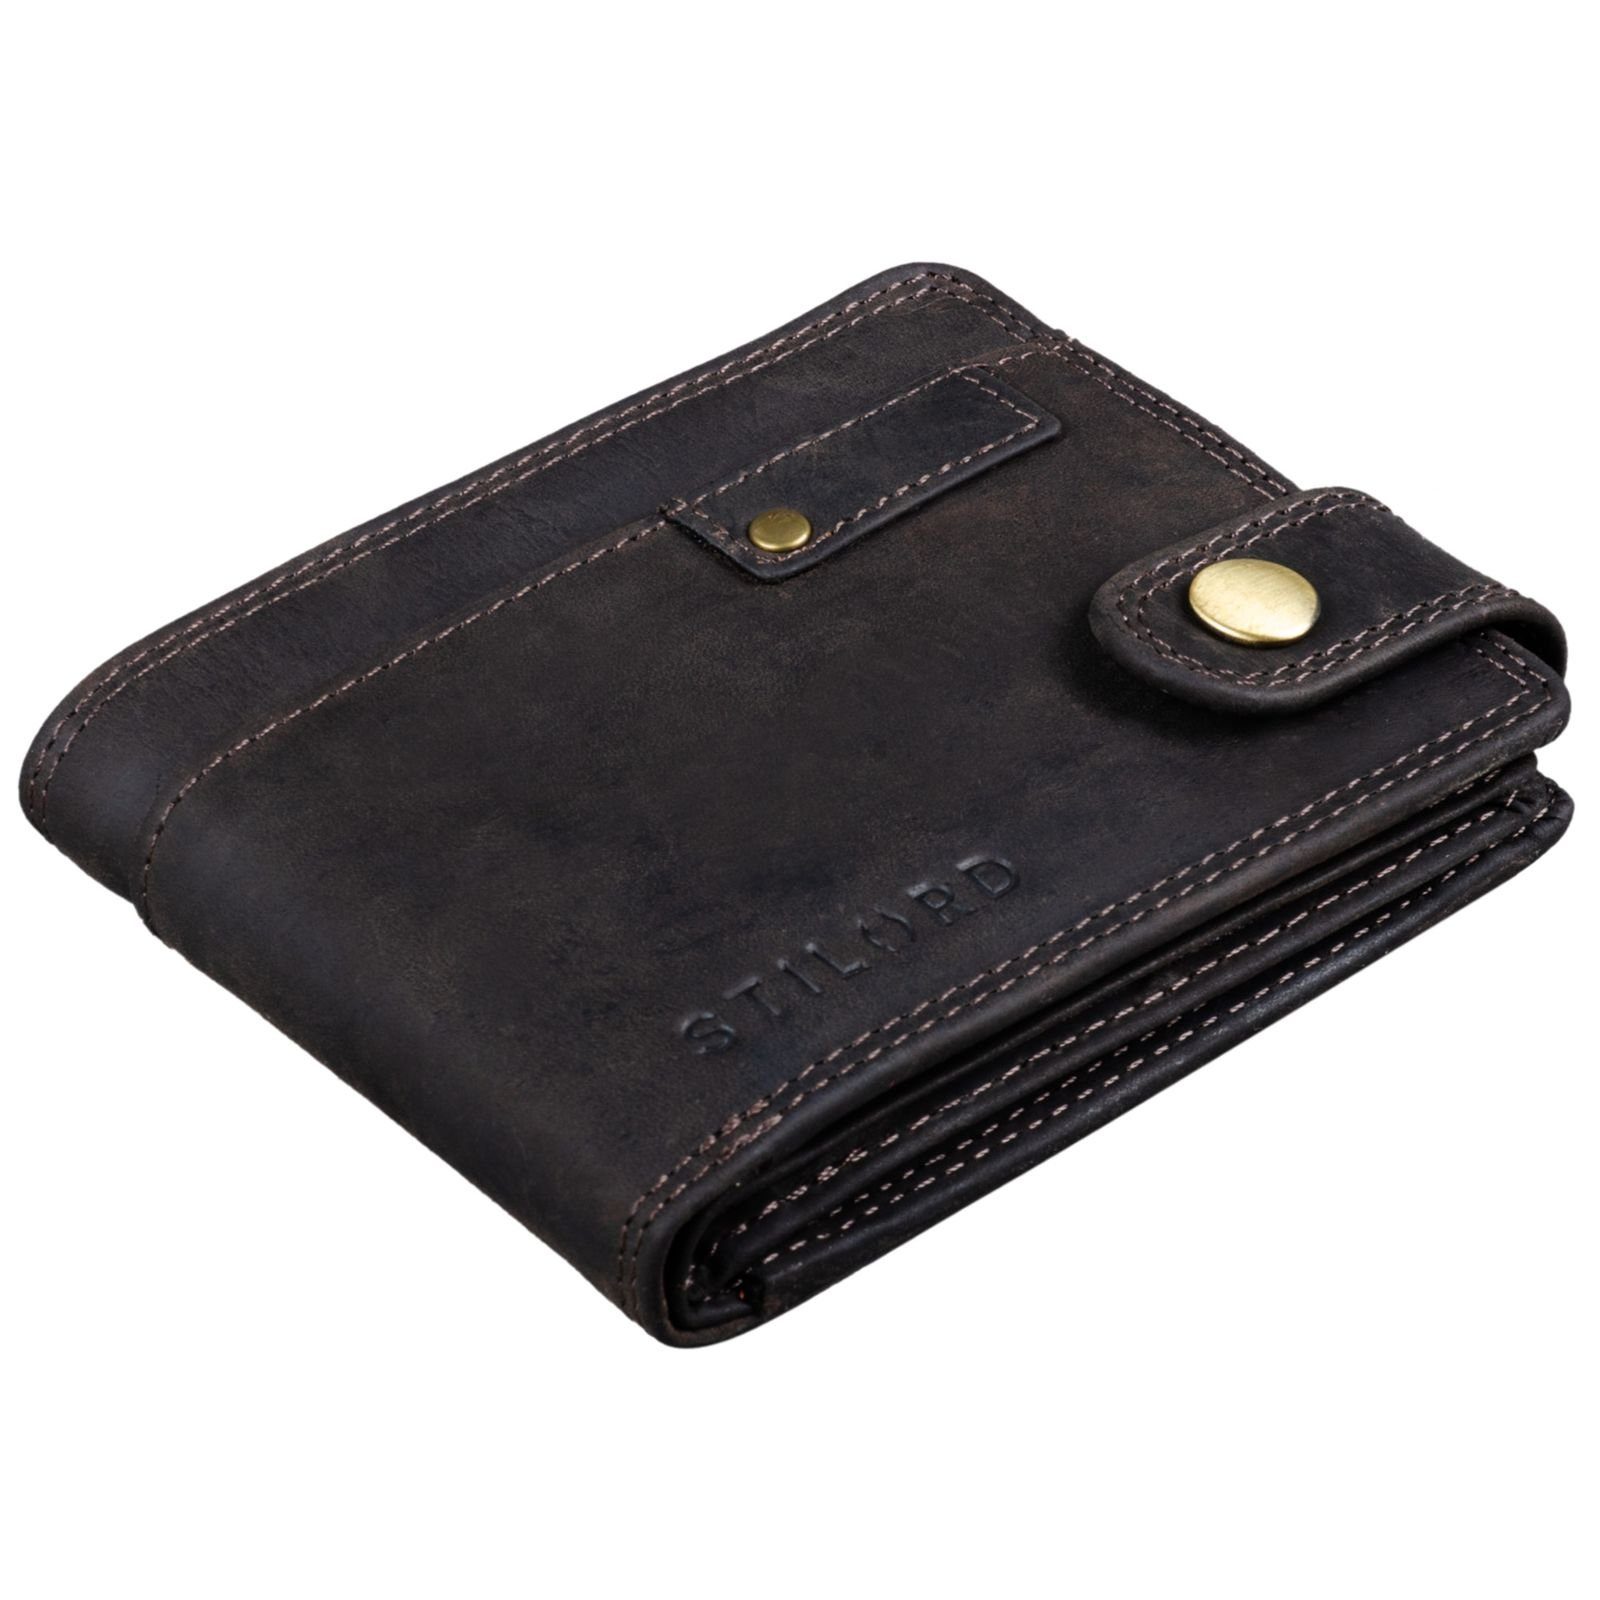 und Herren - RFID NFC Leder braun dunkel Geldbörse STILORD Geldbörse "Finley"